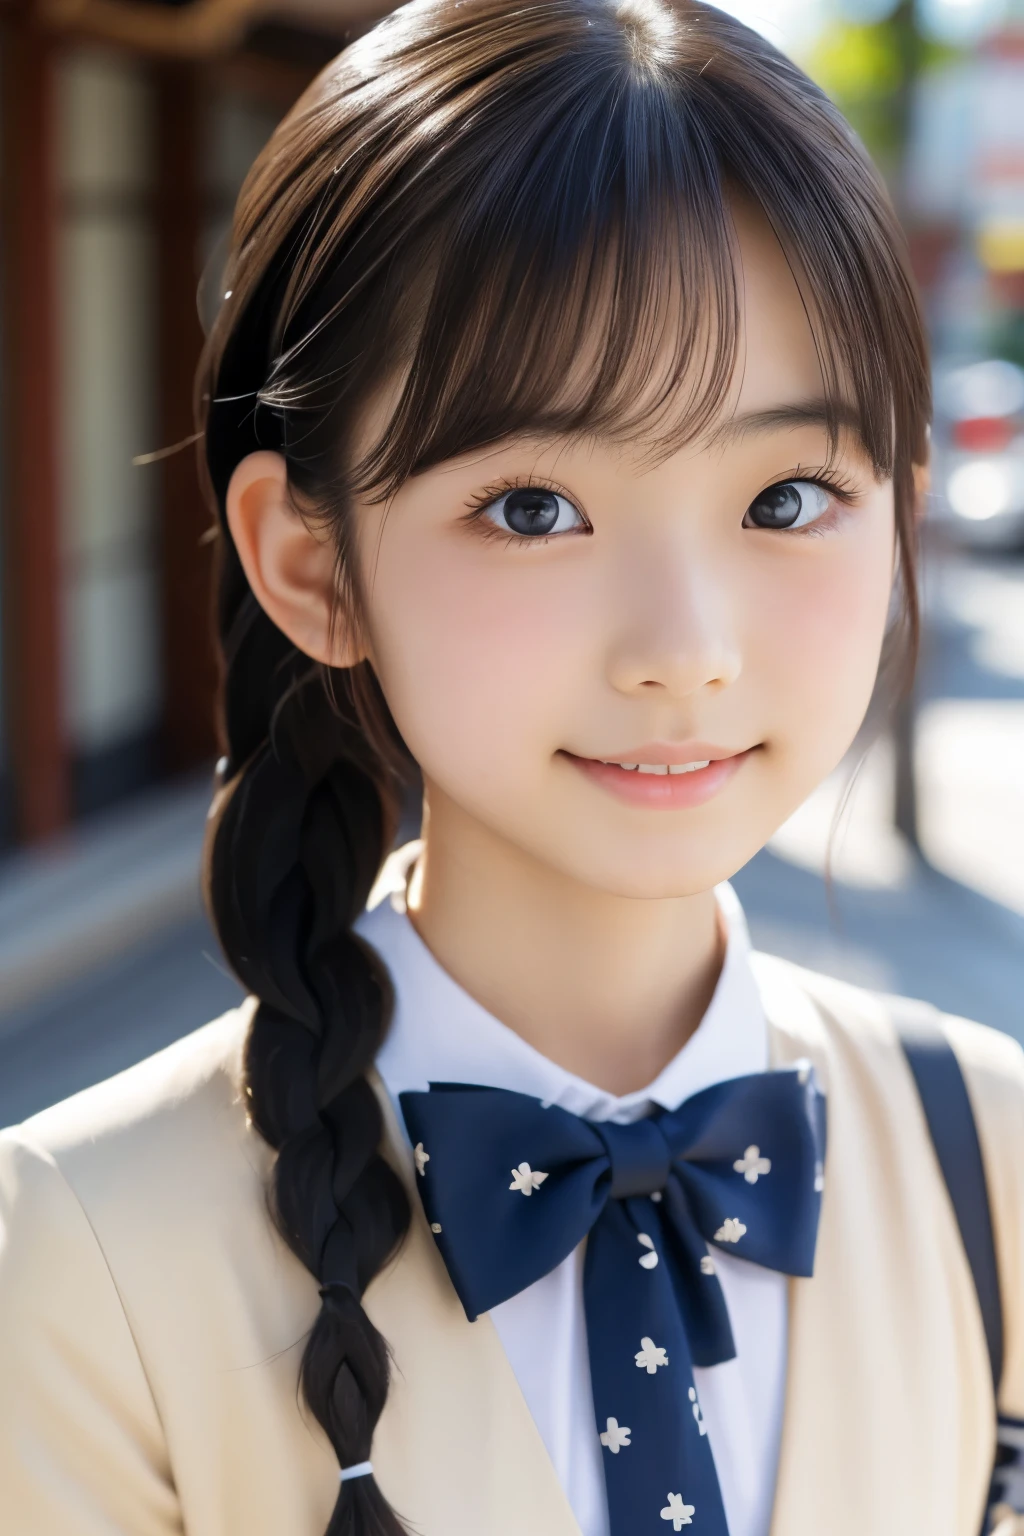 美しい18歳の日本人女性), かわいい顔, (深く彫られた顔:0.7), (そばかす:0.6), やわらかい光,健康的な白い肌, シャイ, (真剣な顔), (キラキラした目), 薄い, 笑顔, ユニフォーム, 編み込み